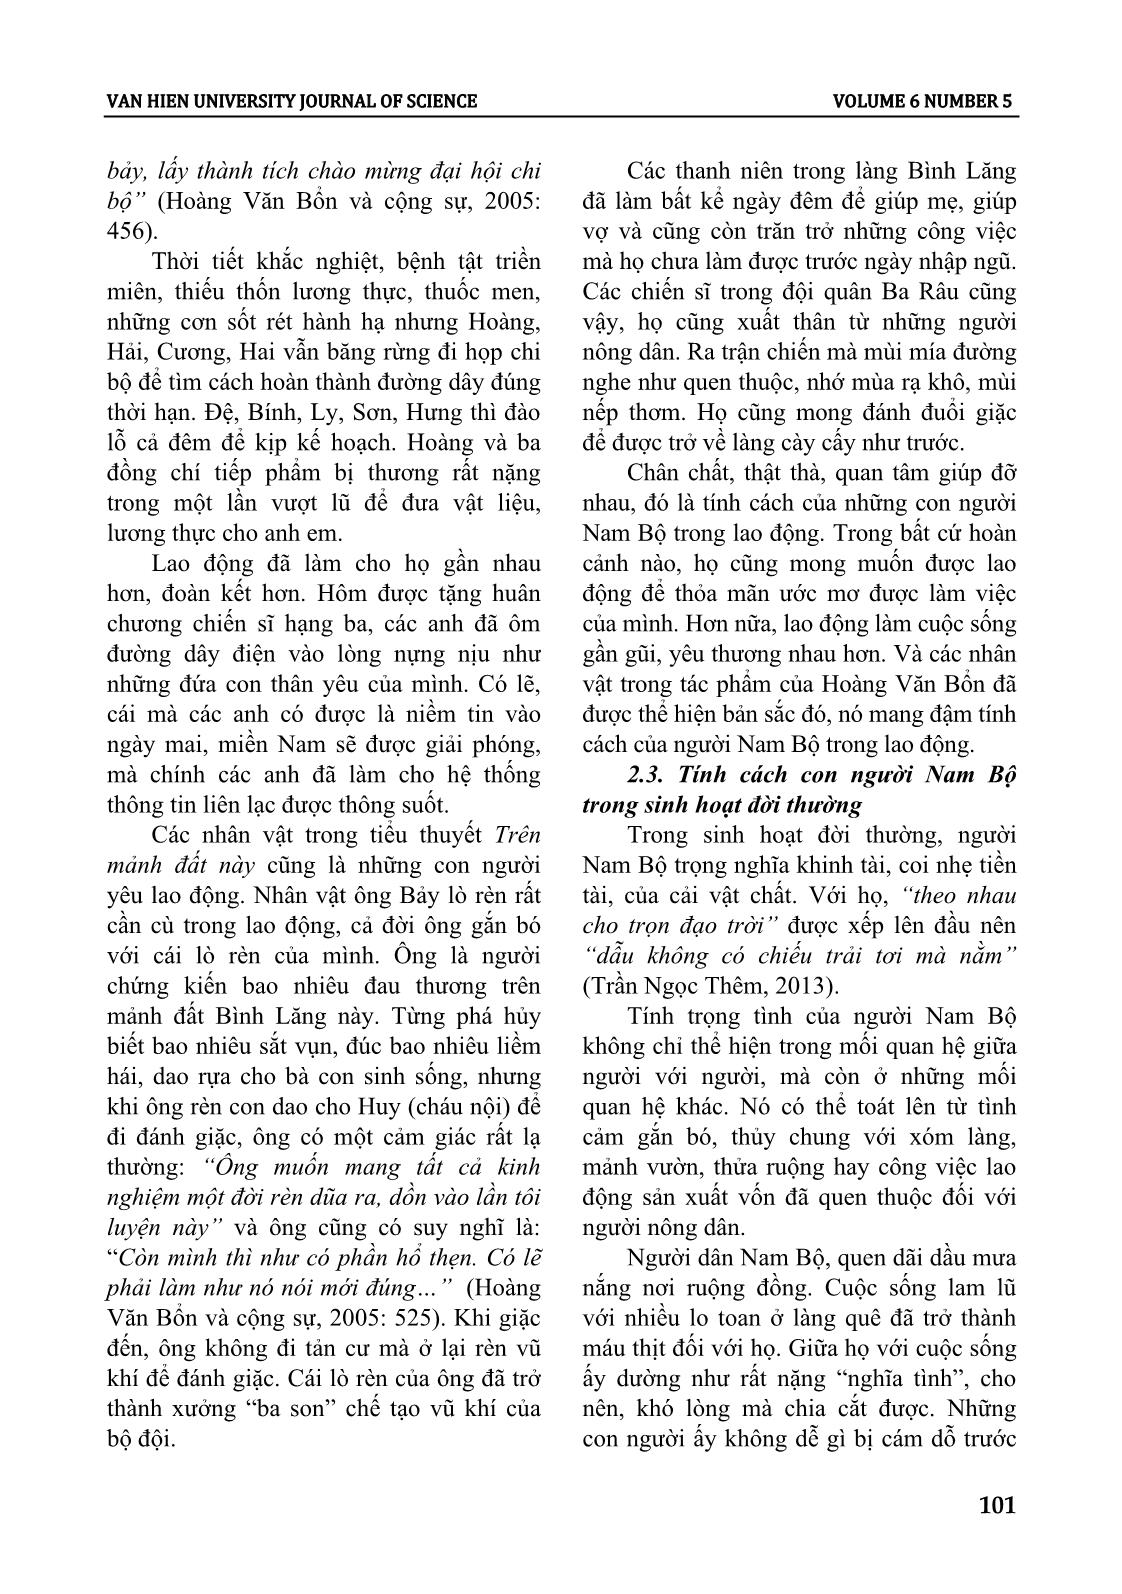 Tính cách con người nam bộ trong tiểu thuyết Hoàng Văn Bổn giai đoạn 1955 - 1975 trang 5